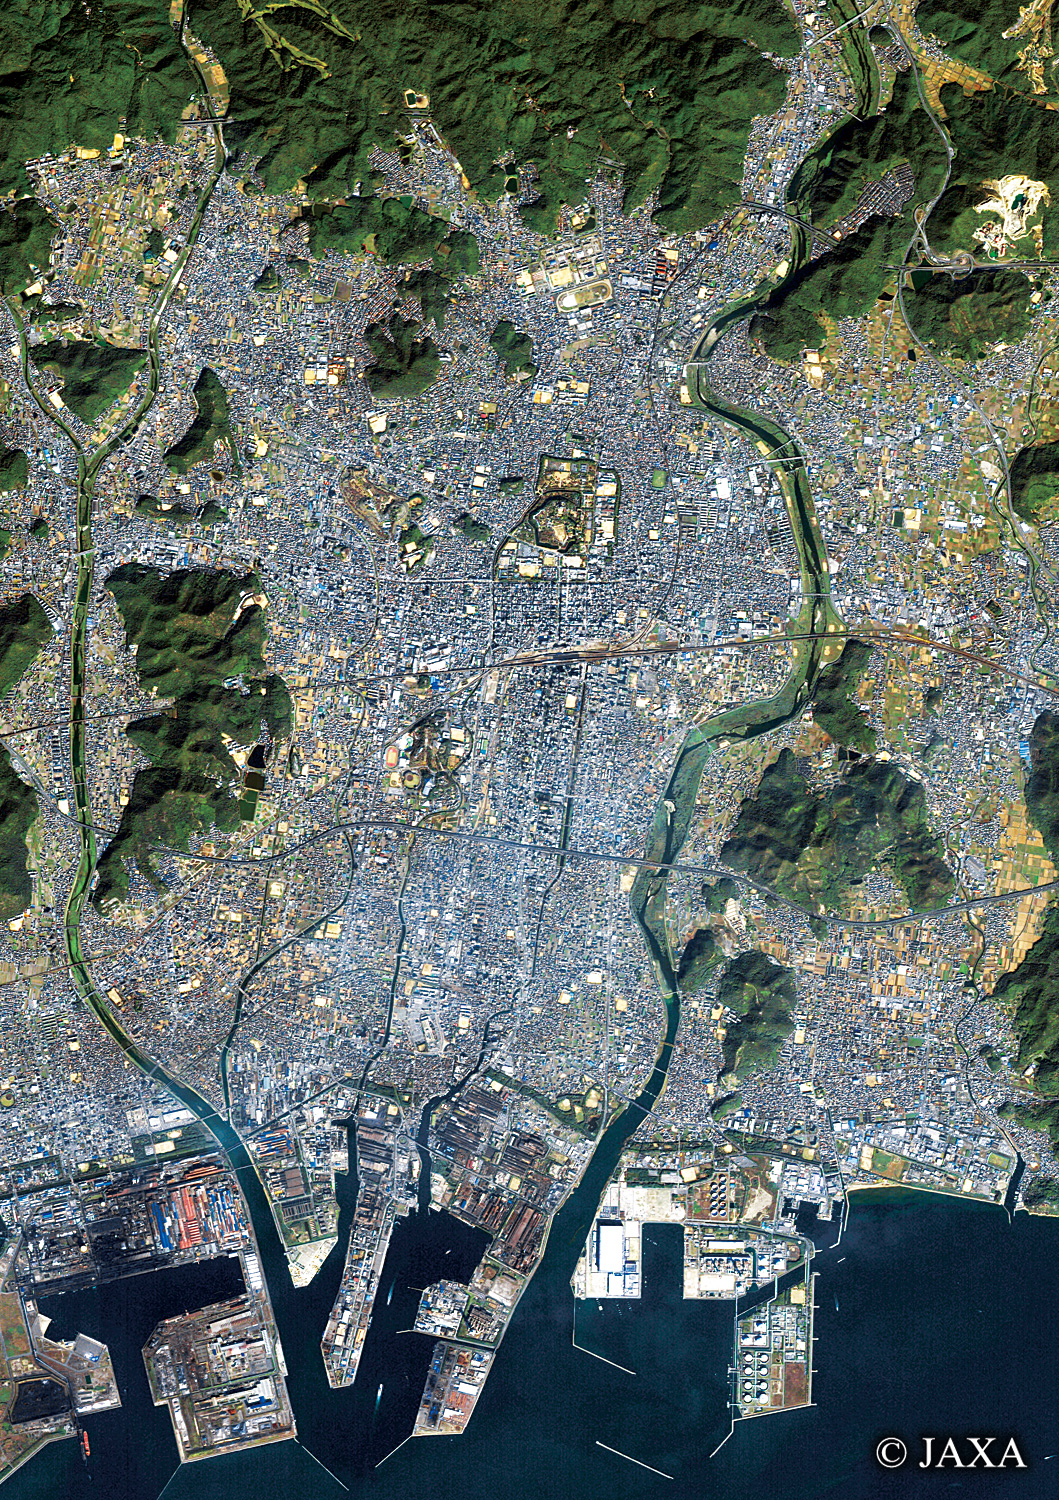 だいちから見た日本の都市 姫路城辺:衛星画像